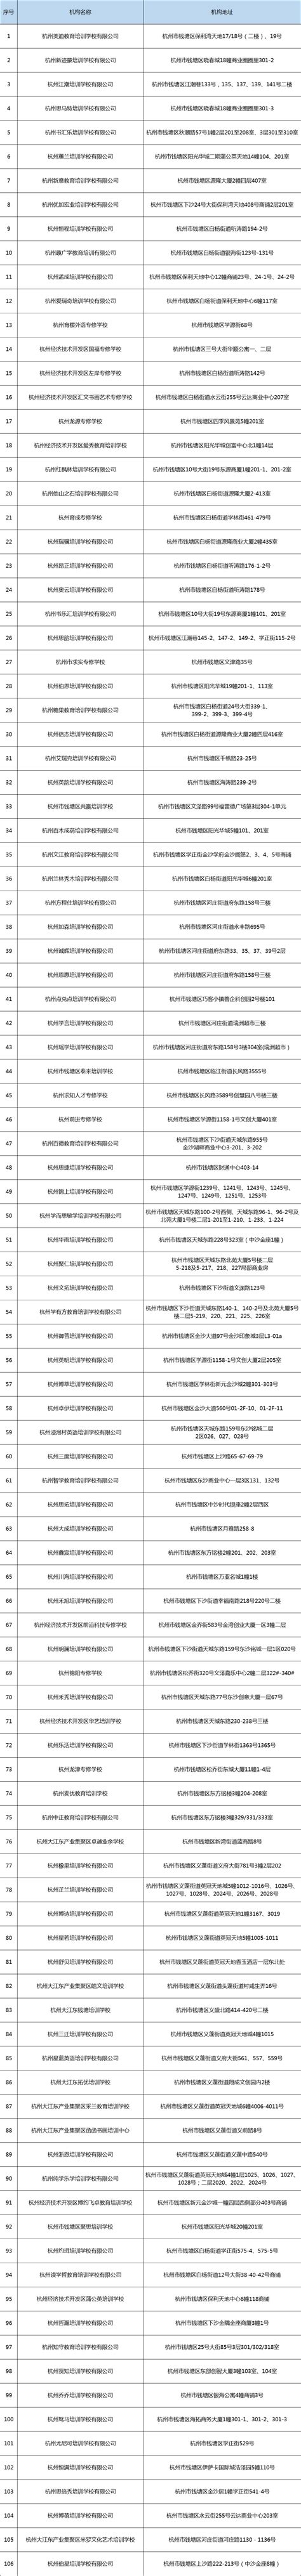 最新！杭州市教育局公布全市校外培训机构白名单-杭州新闻中心-杭州网